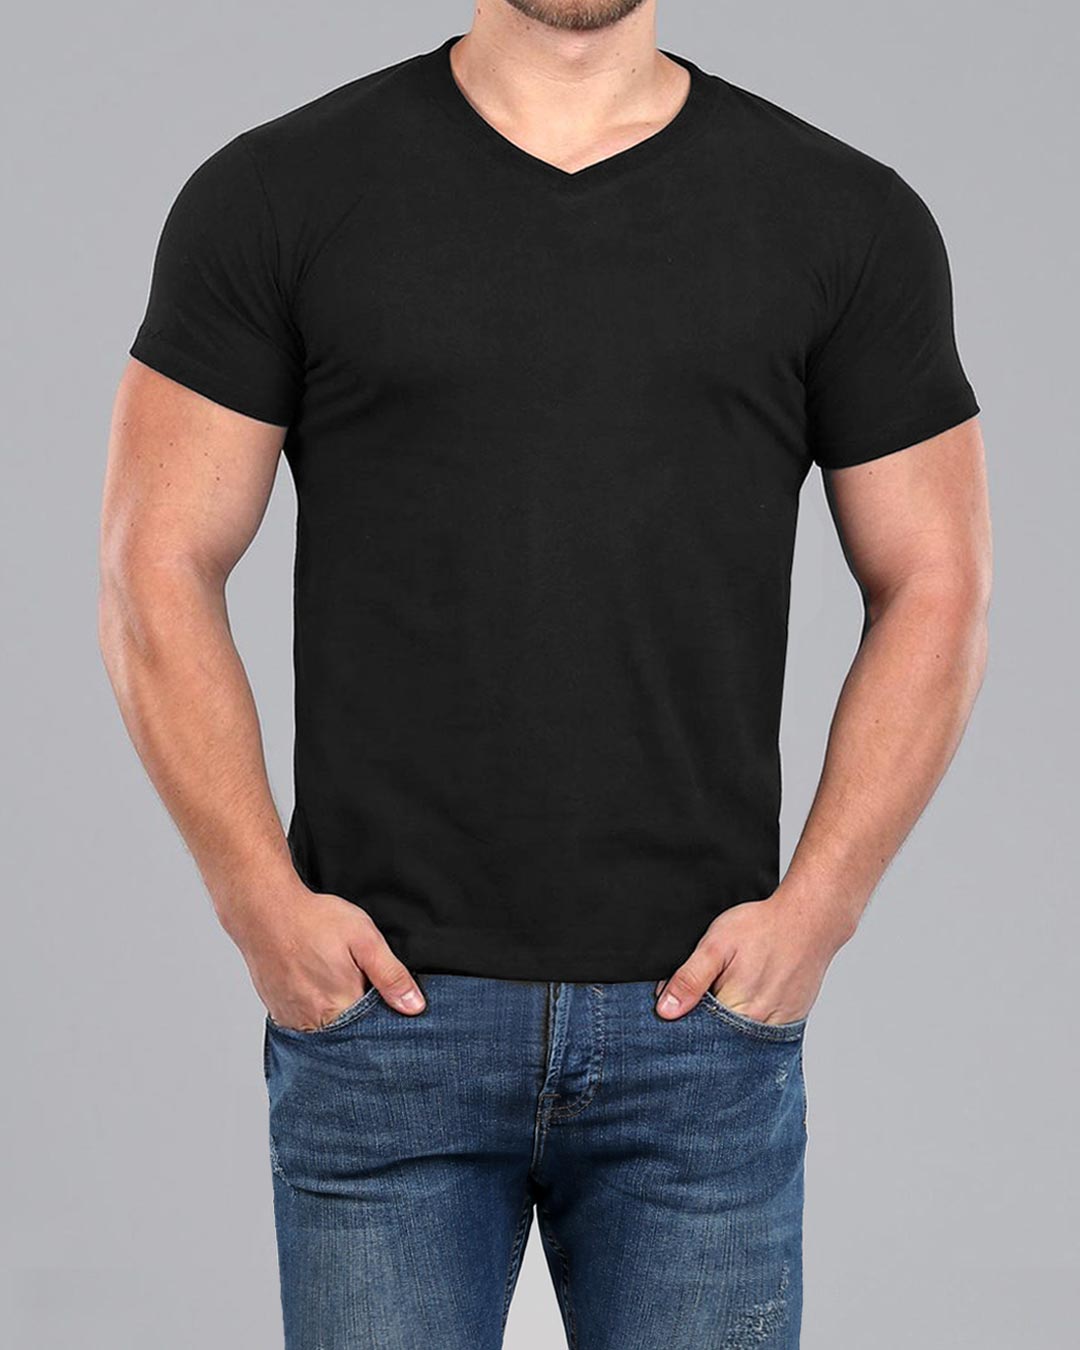 øverst Indstilling vinden er stærk Men's Black V-Neck Fitted Plain T-Shirt | Muscle Fit Basics